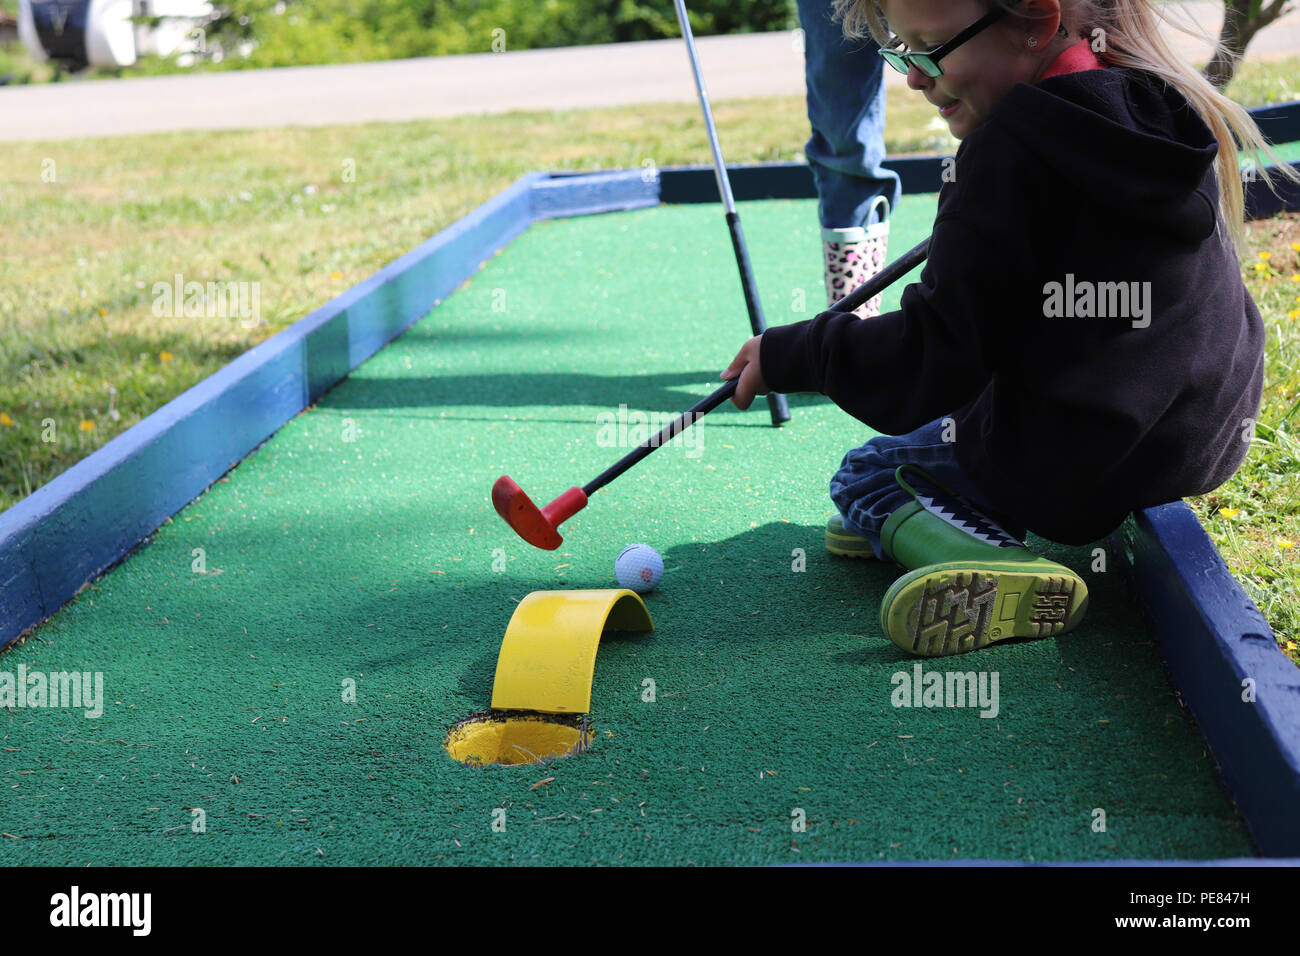 Zwei Kinder spielen Mini Golf im Frühling Stockfotografie - Alamy